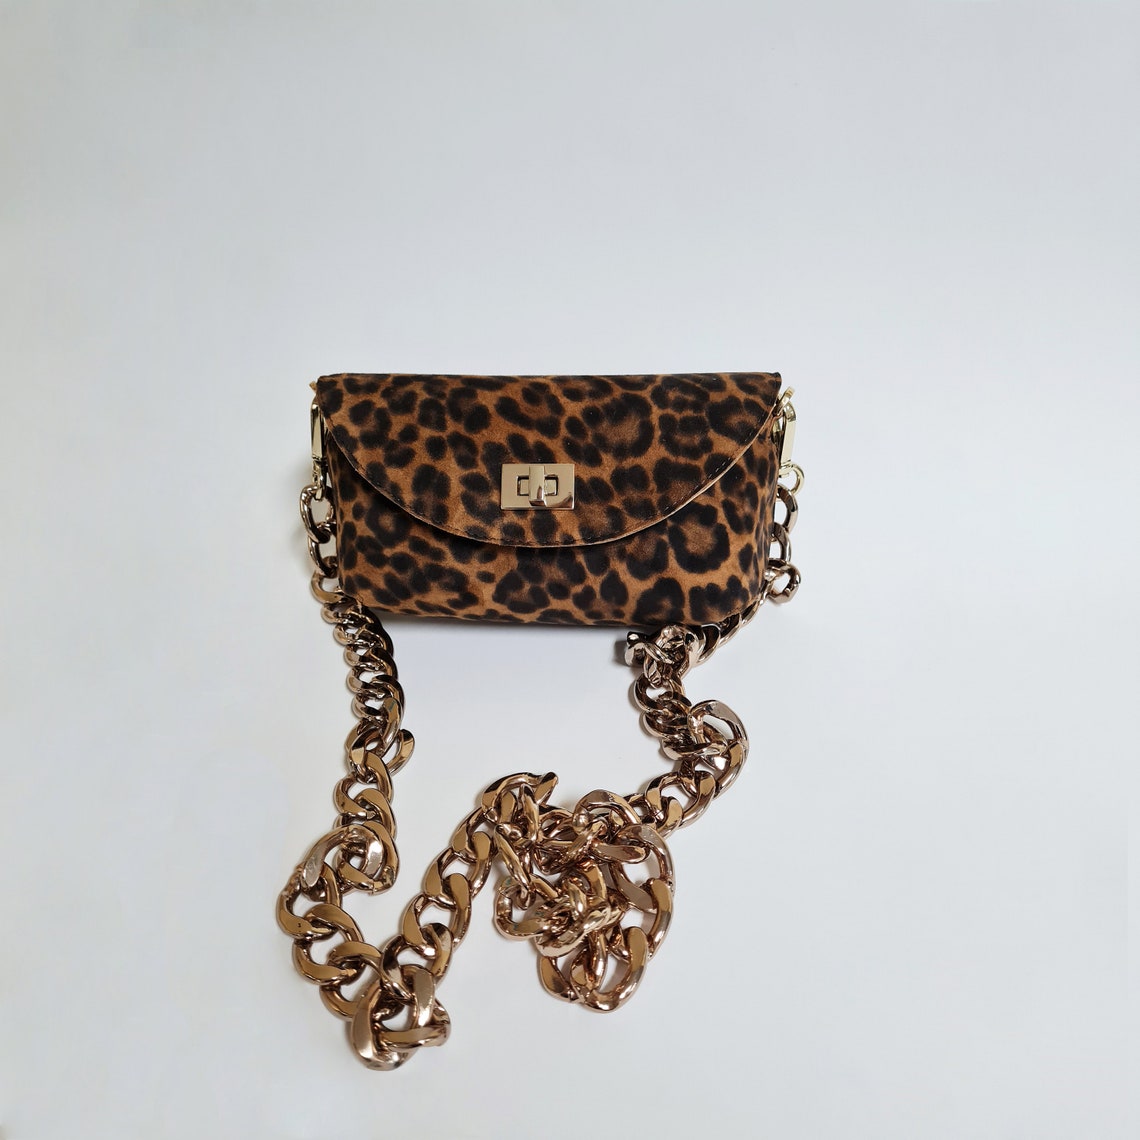 Leather Shoulder Bag With Leopard Print - Etsy UK